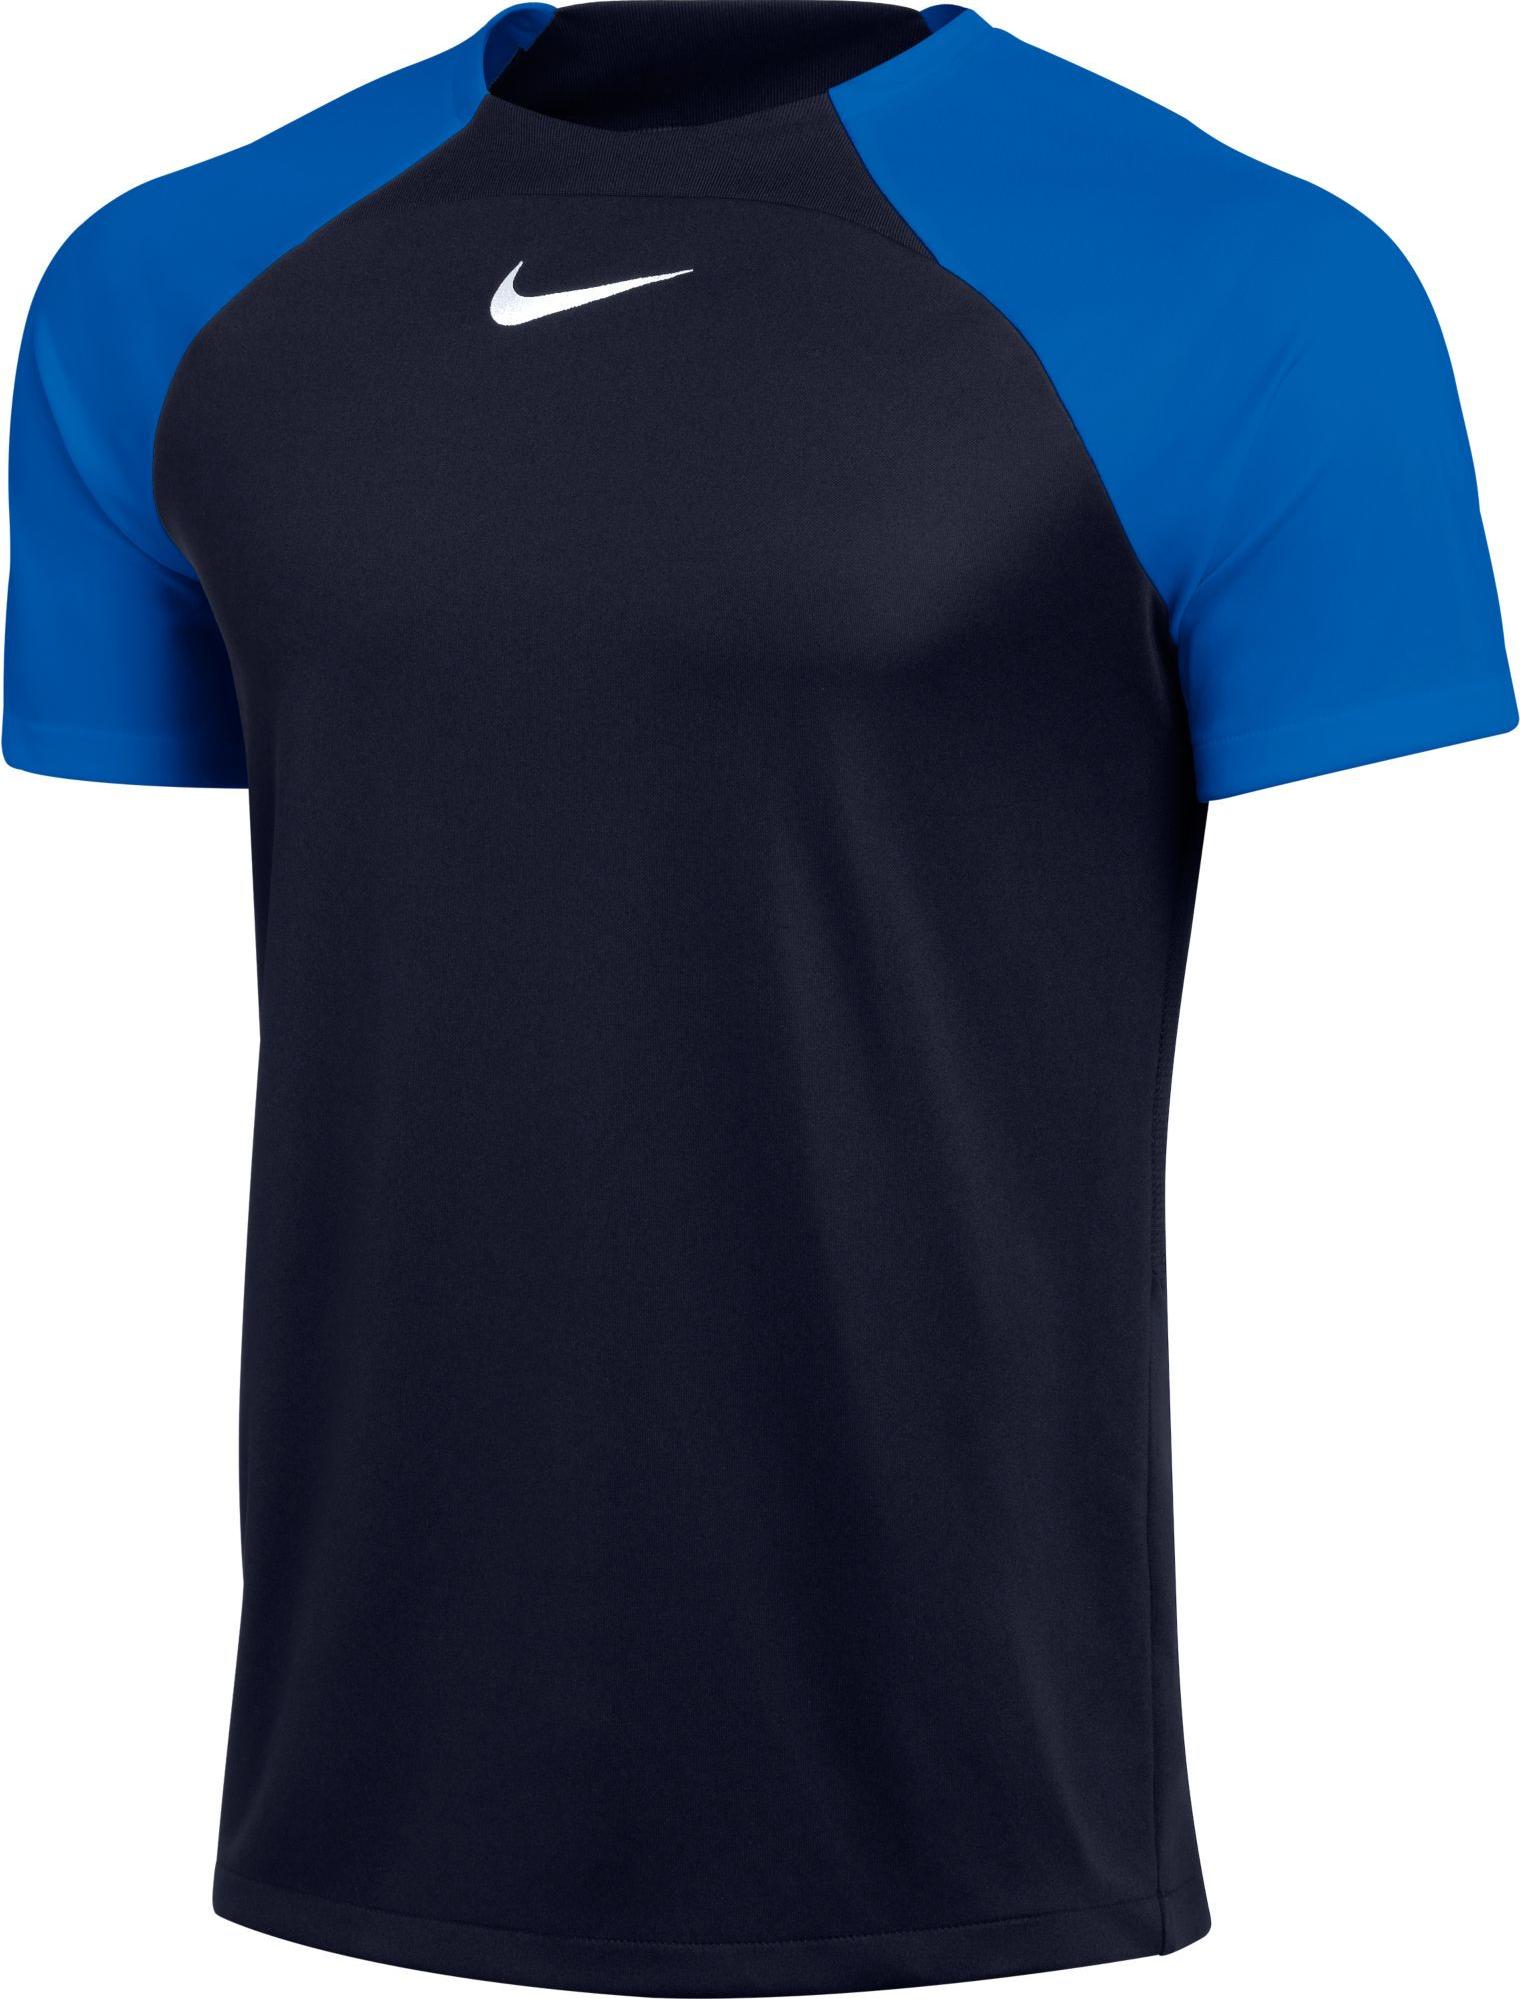 Camiseta Nike Academy Pro T-Shirt